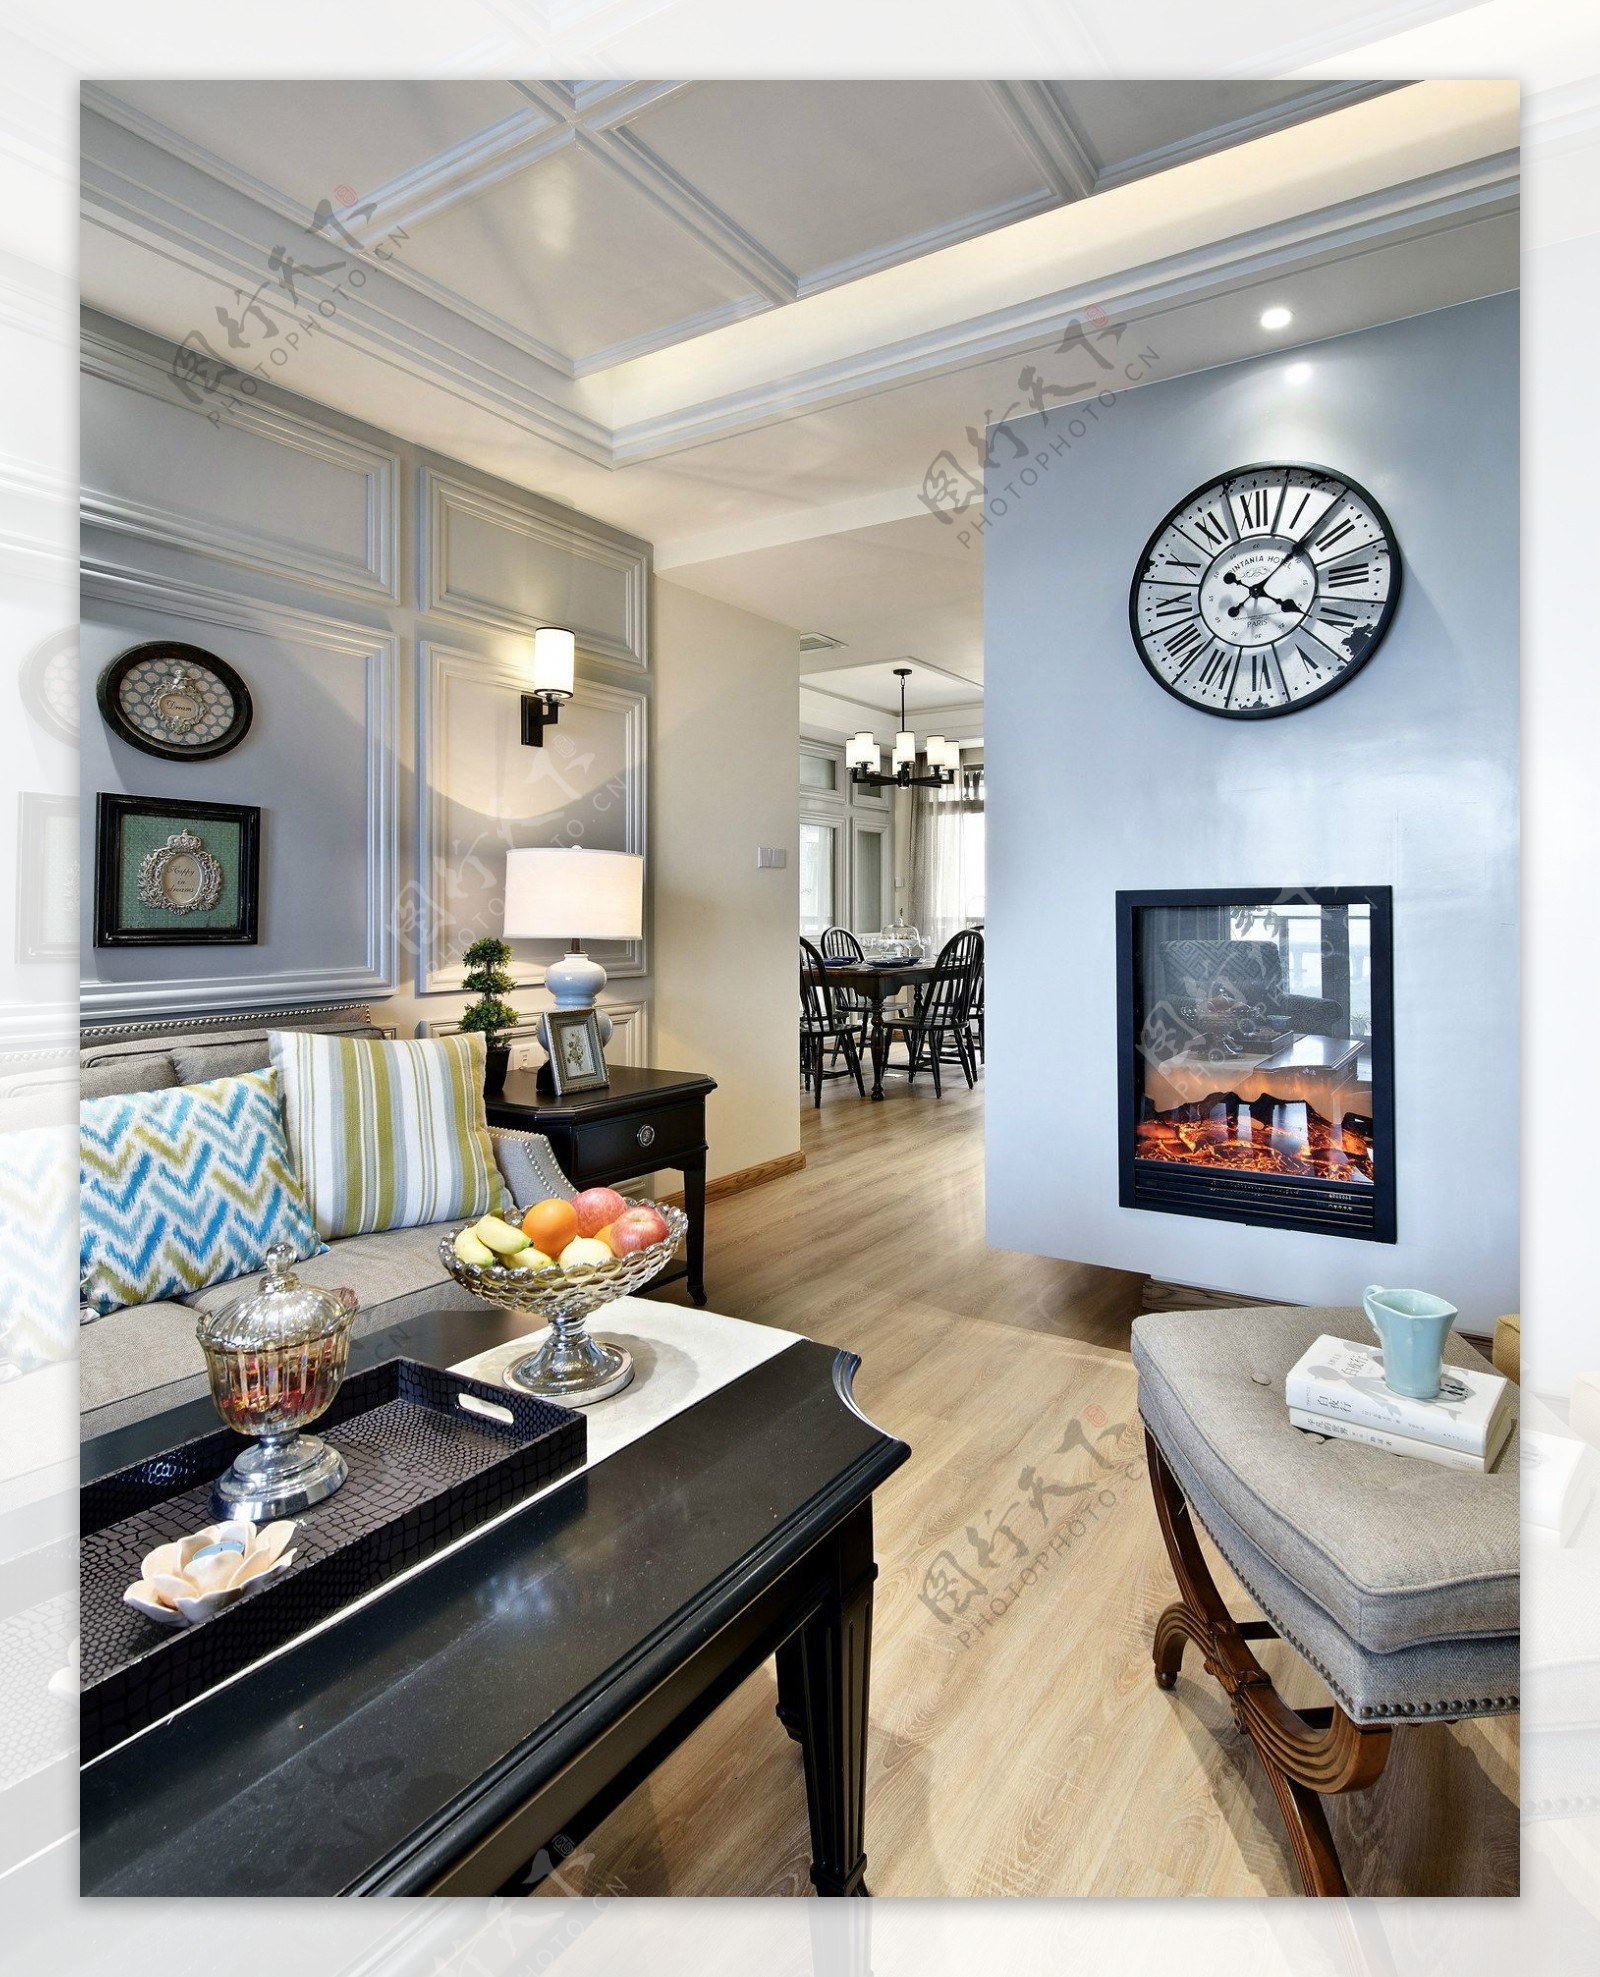 现代时尚客厅浅蓝色背景墙室内装修效果图